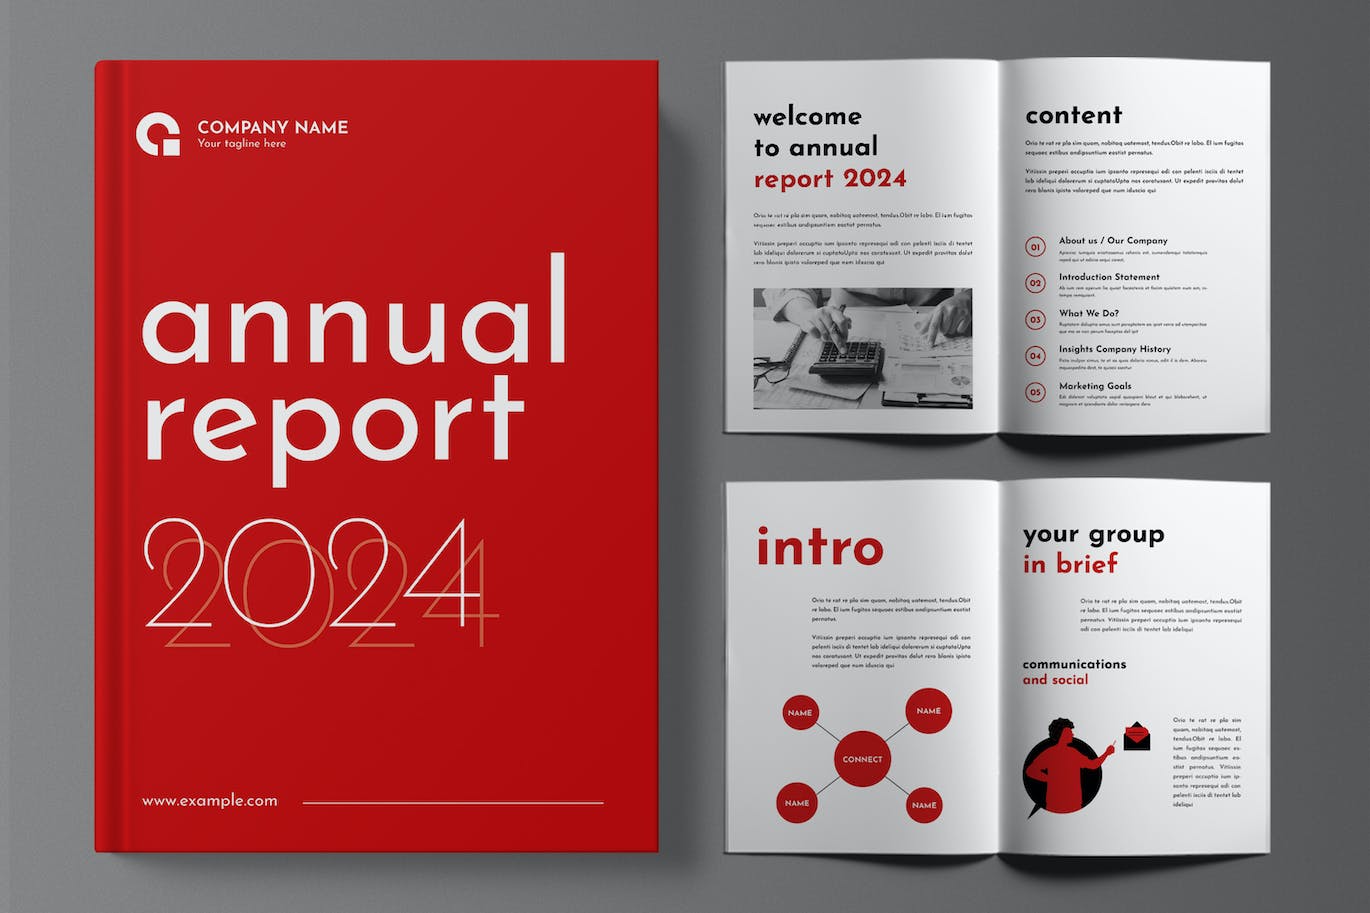 商业年度报告宣传册设计画册模版 (INDD)